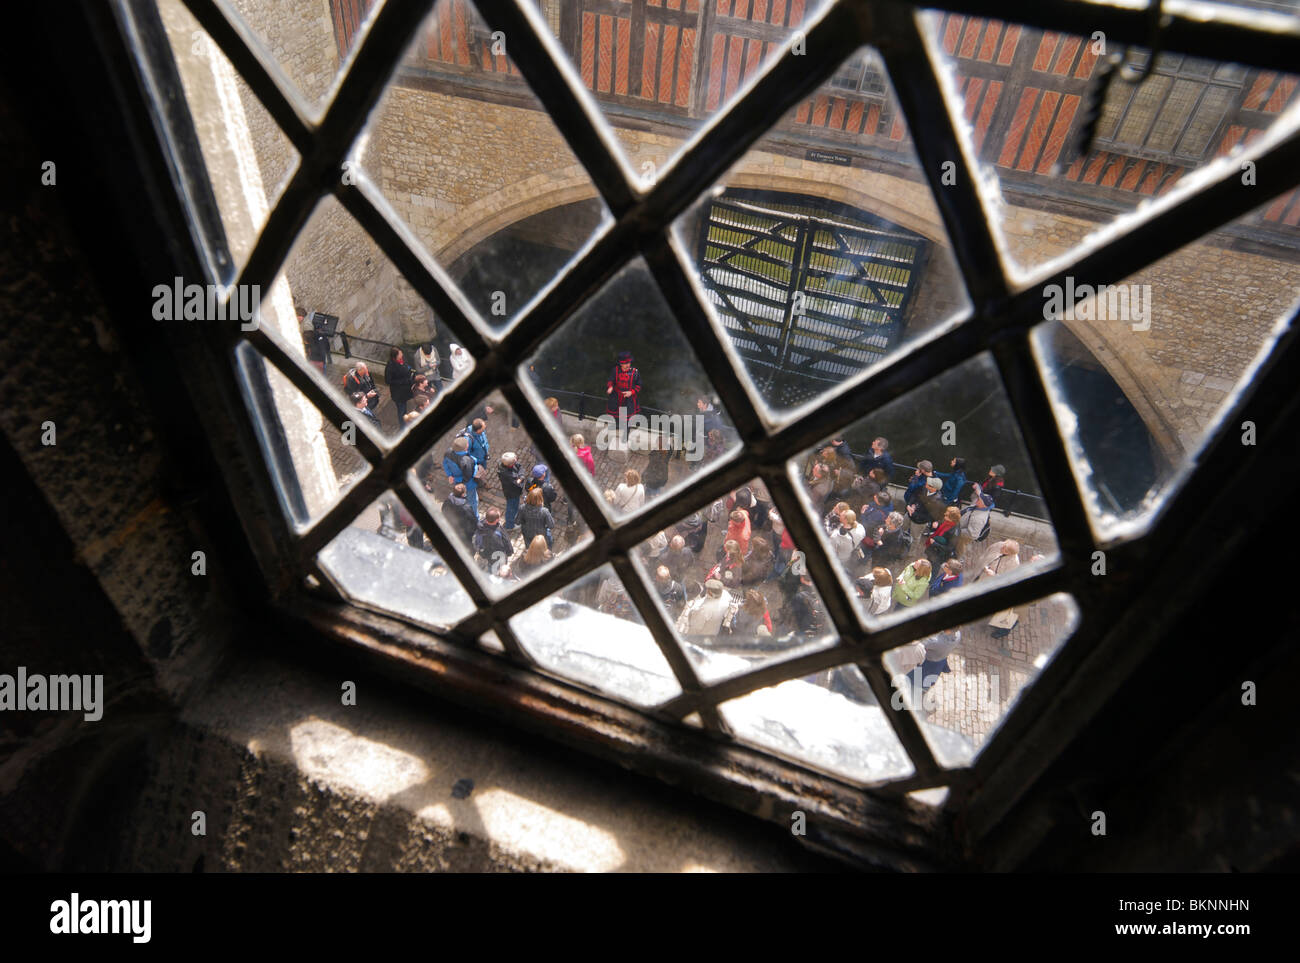 Ein Yeoman Warder oder Beefeater führt Touristen in der Nähe des Verräters Tor in den Tower of London Stockfoto